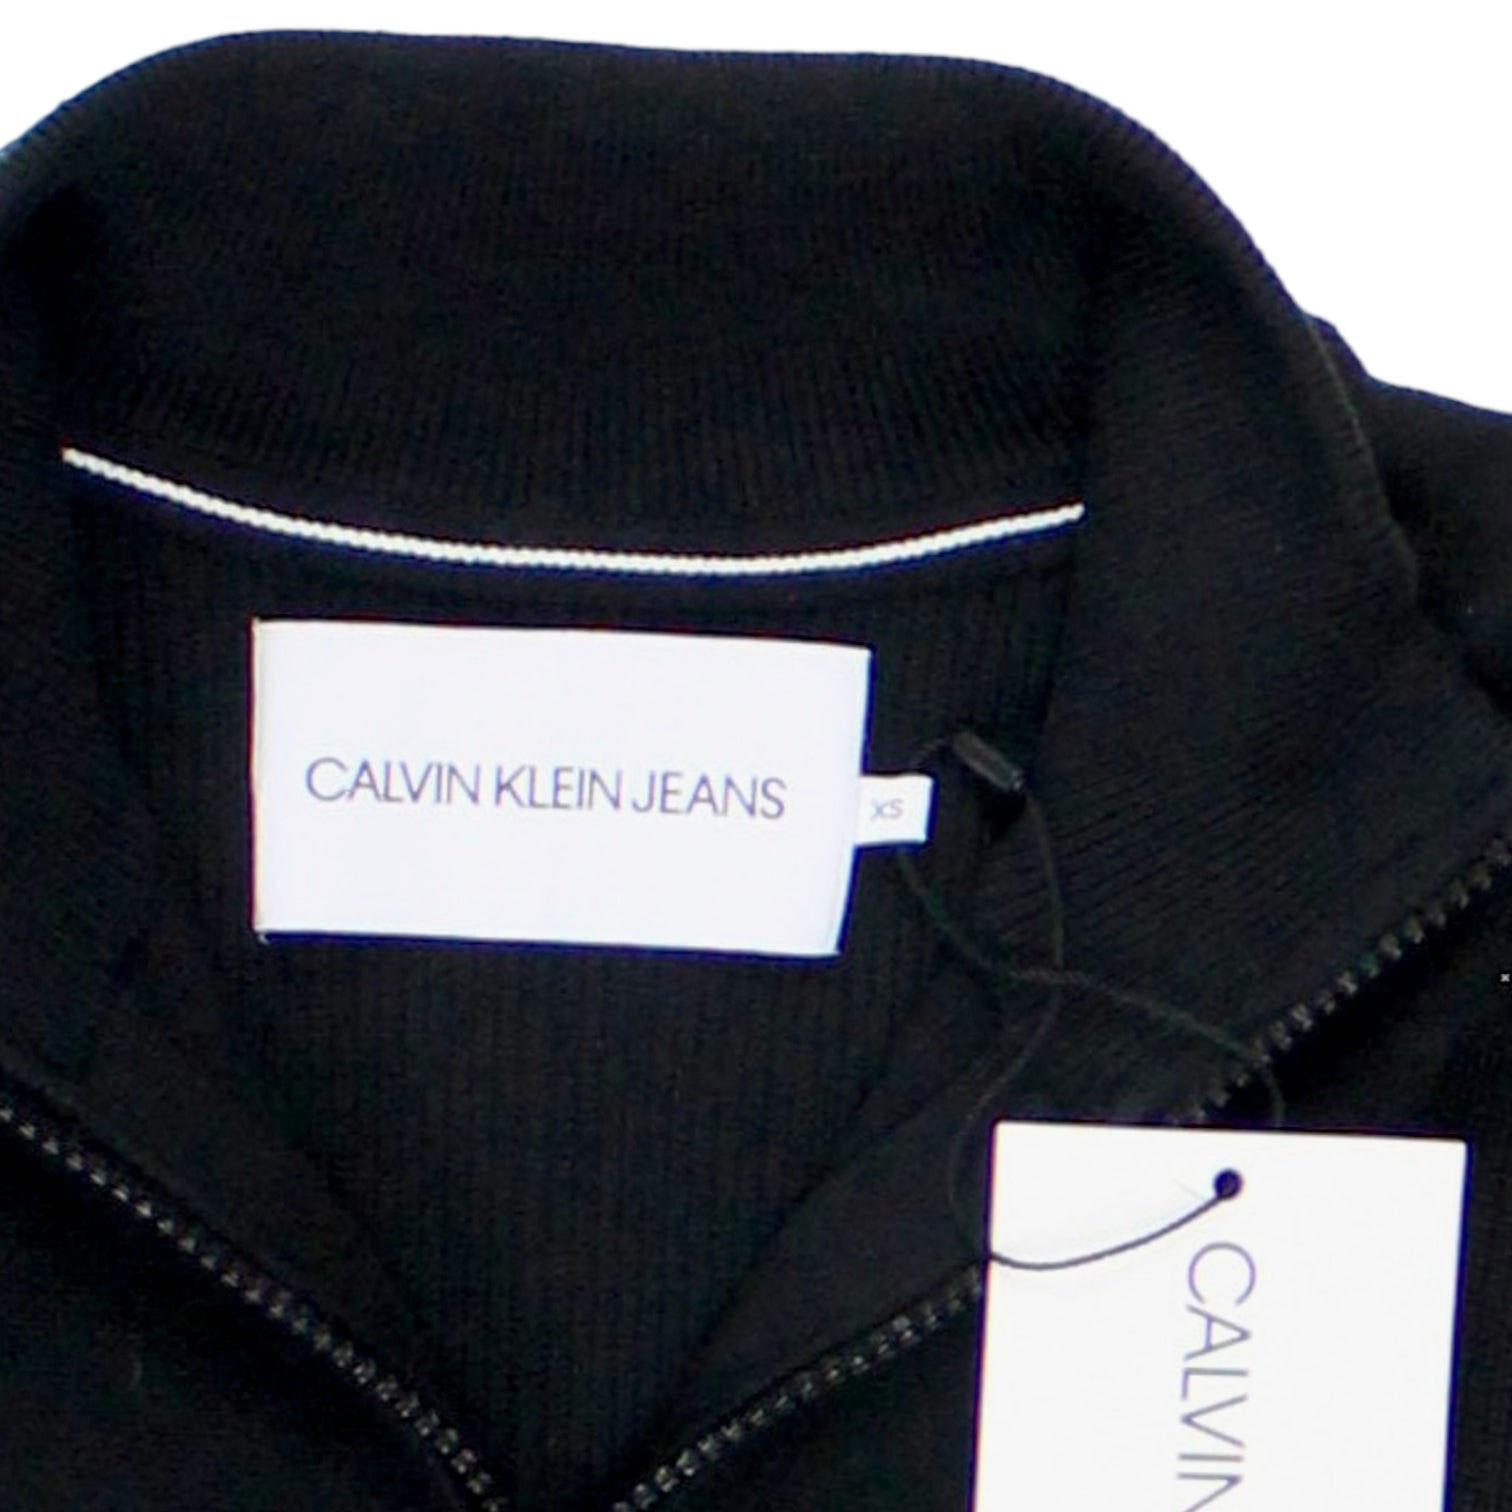 Calvin Klein Jeans Black 1/4 Zip Jumper